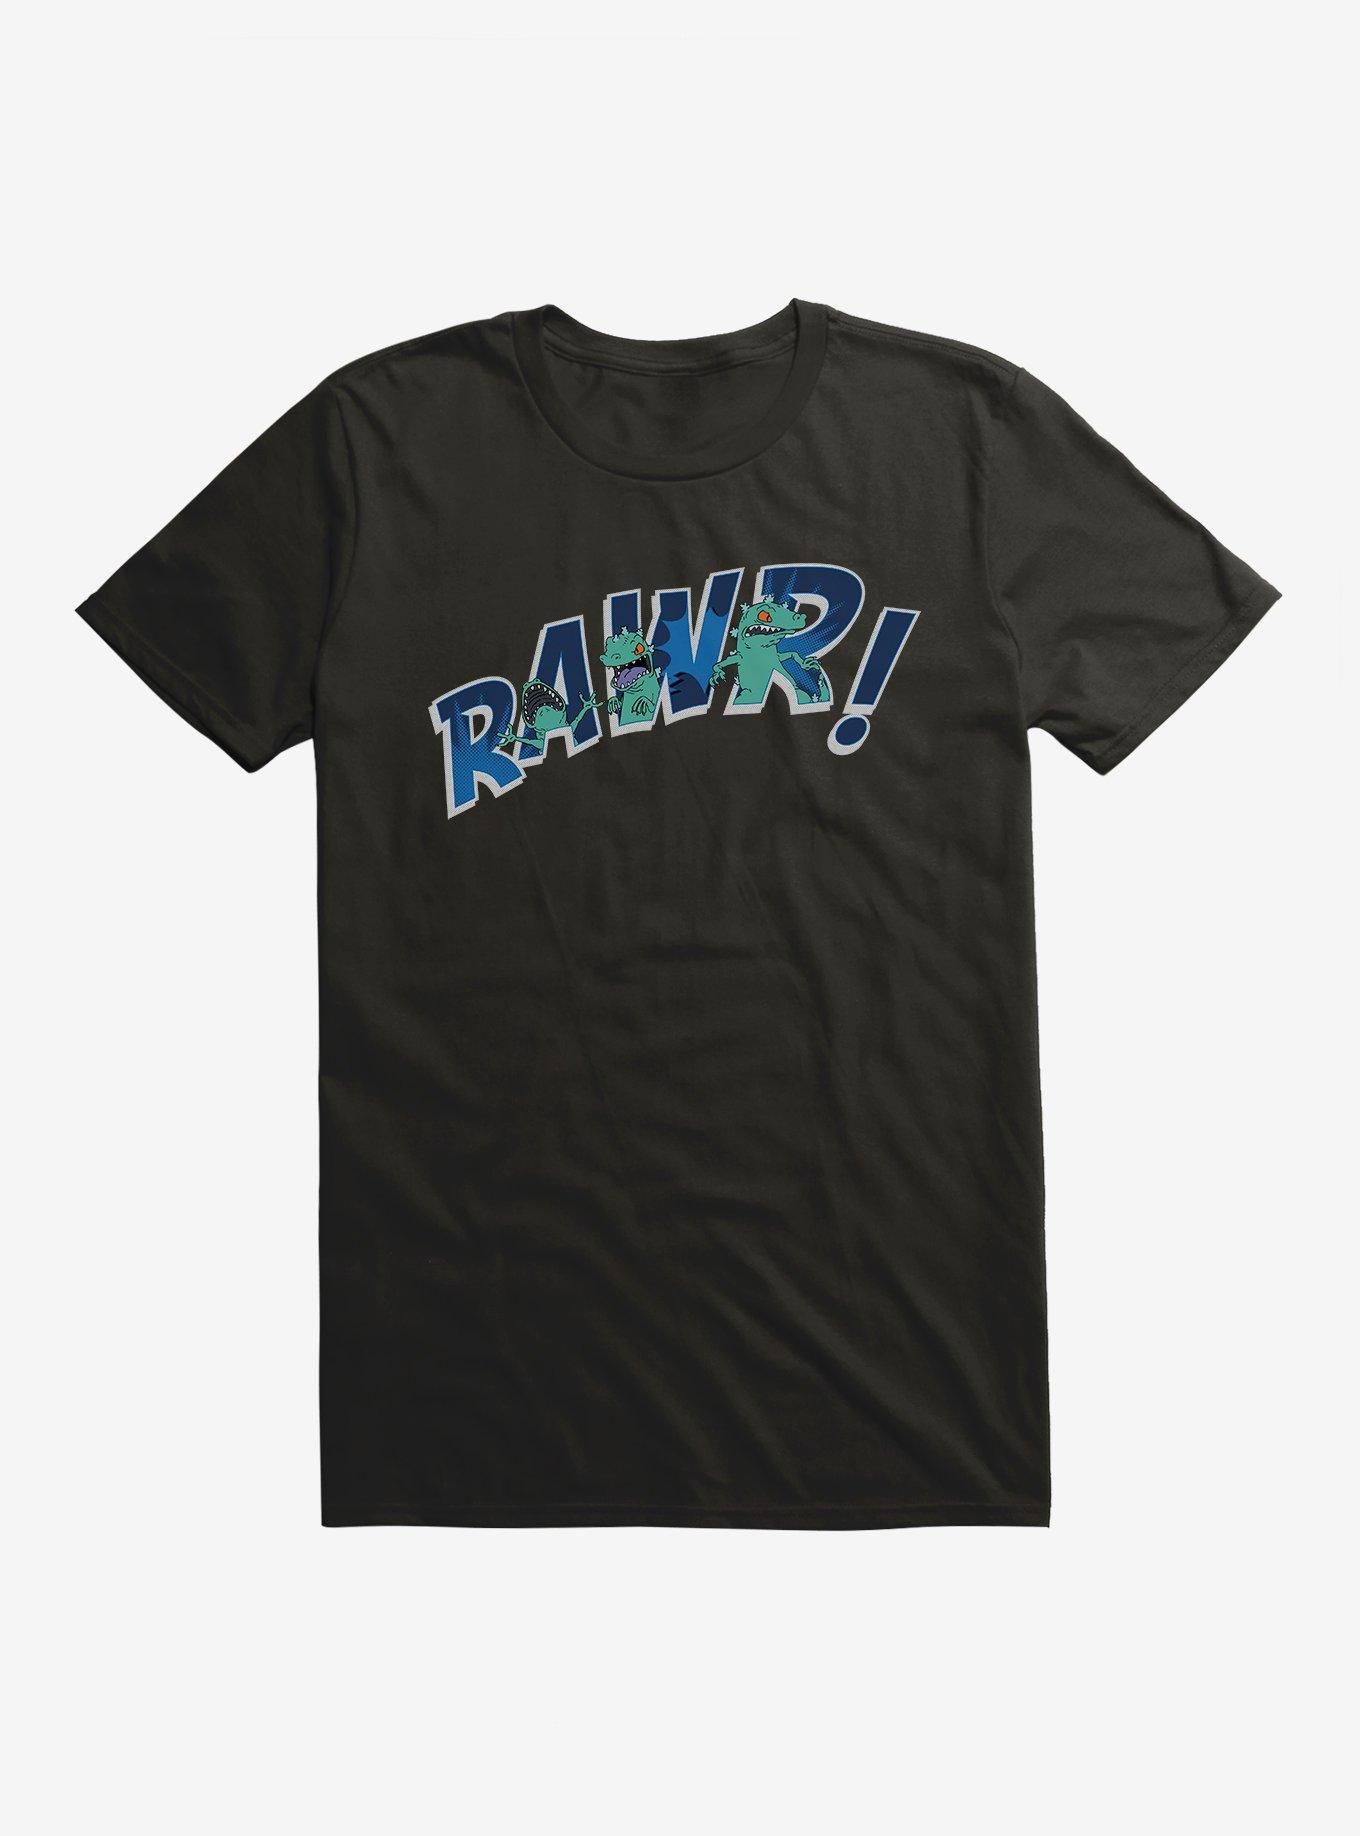 Rugrats Reptar Rawr T-Shirt, BLACK, hi-res